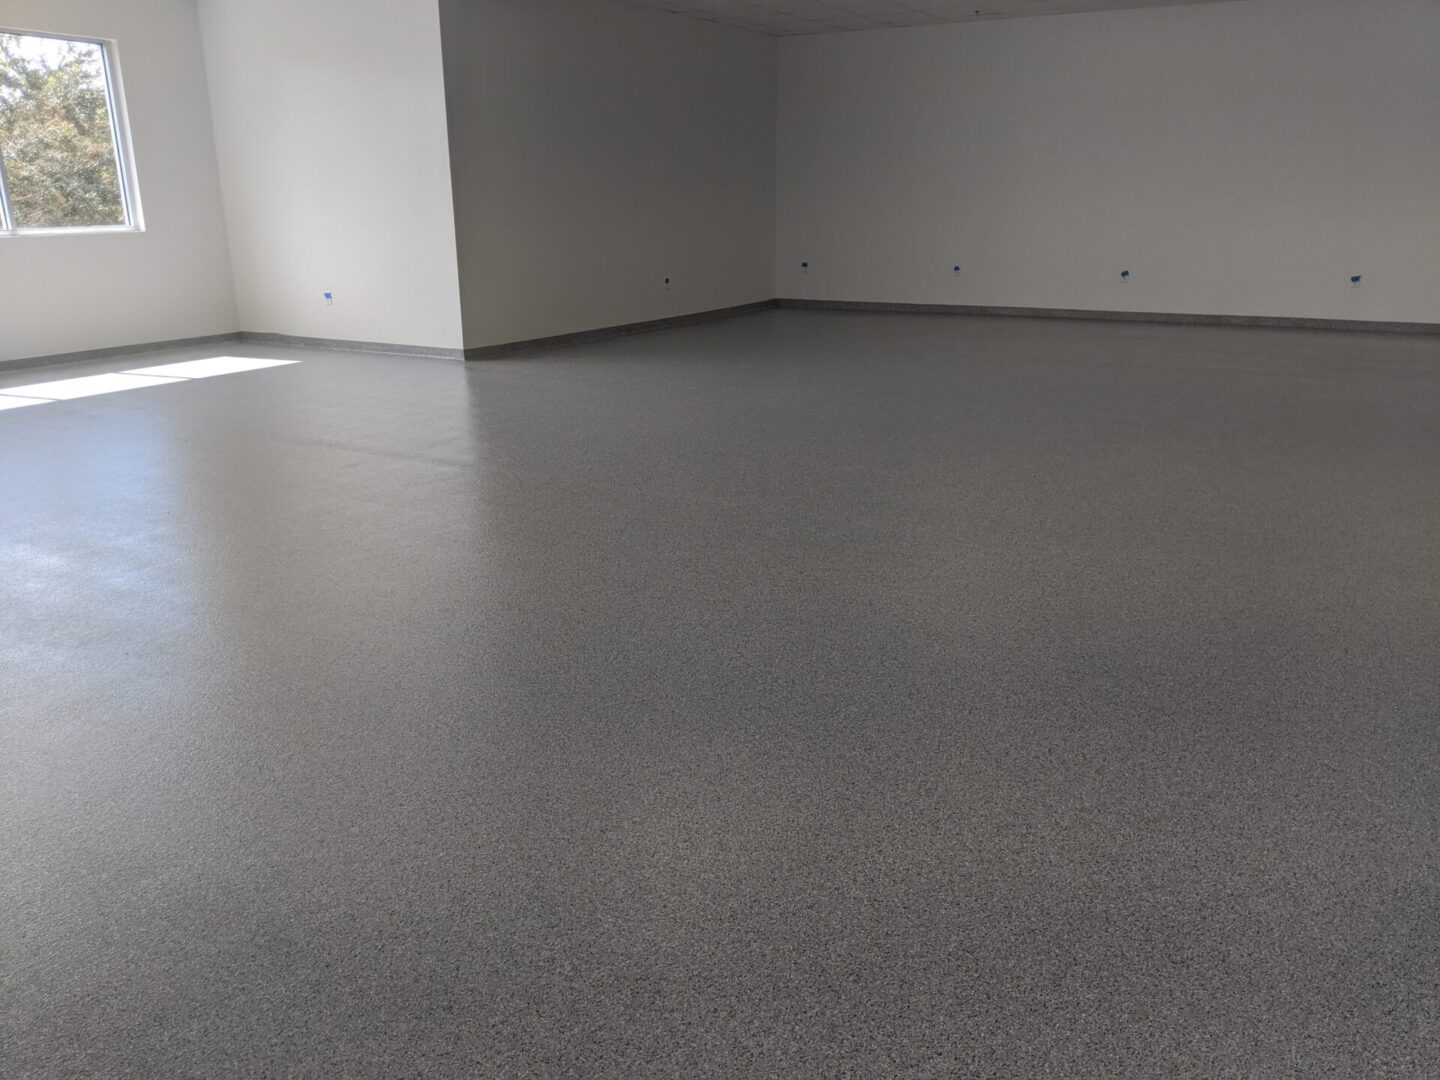 Laboratory epoxy flooring